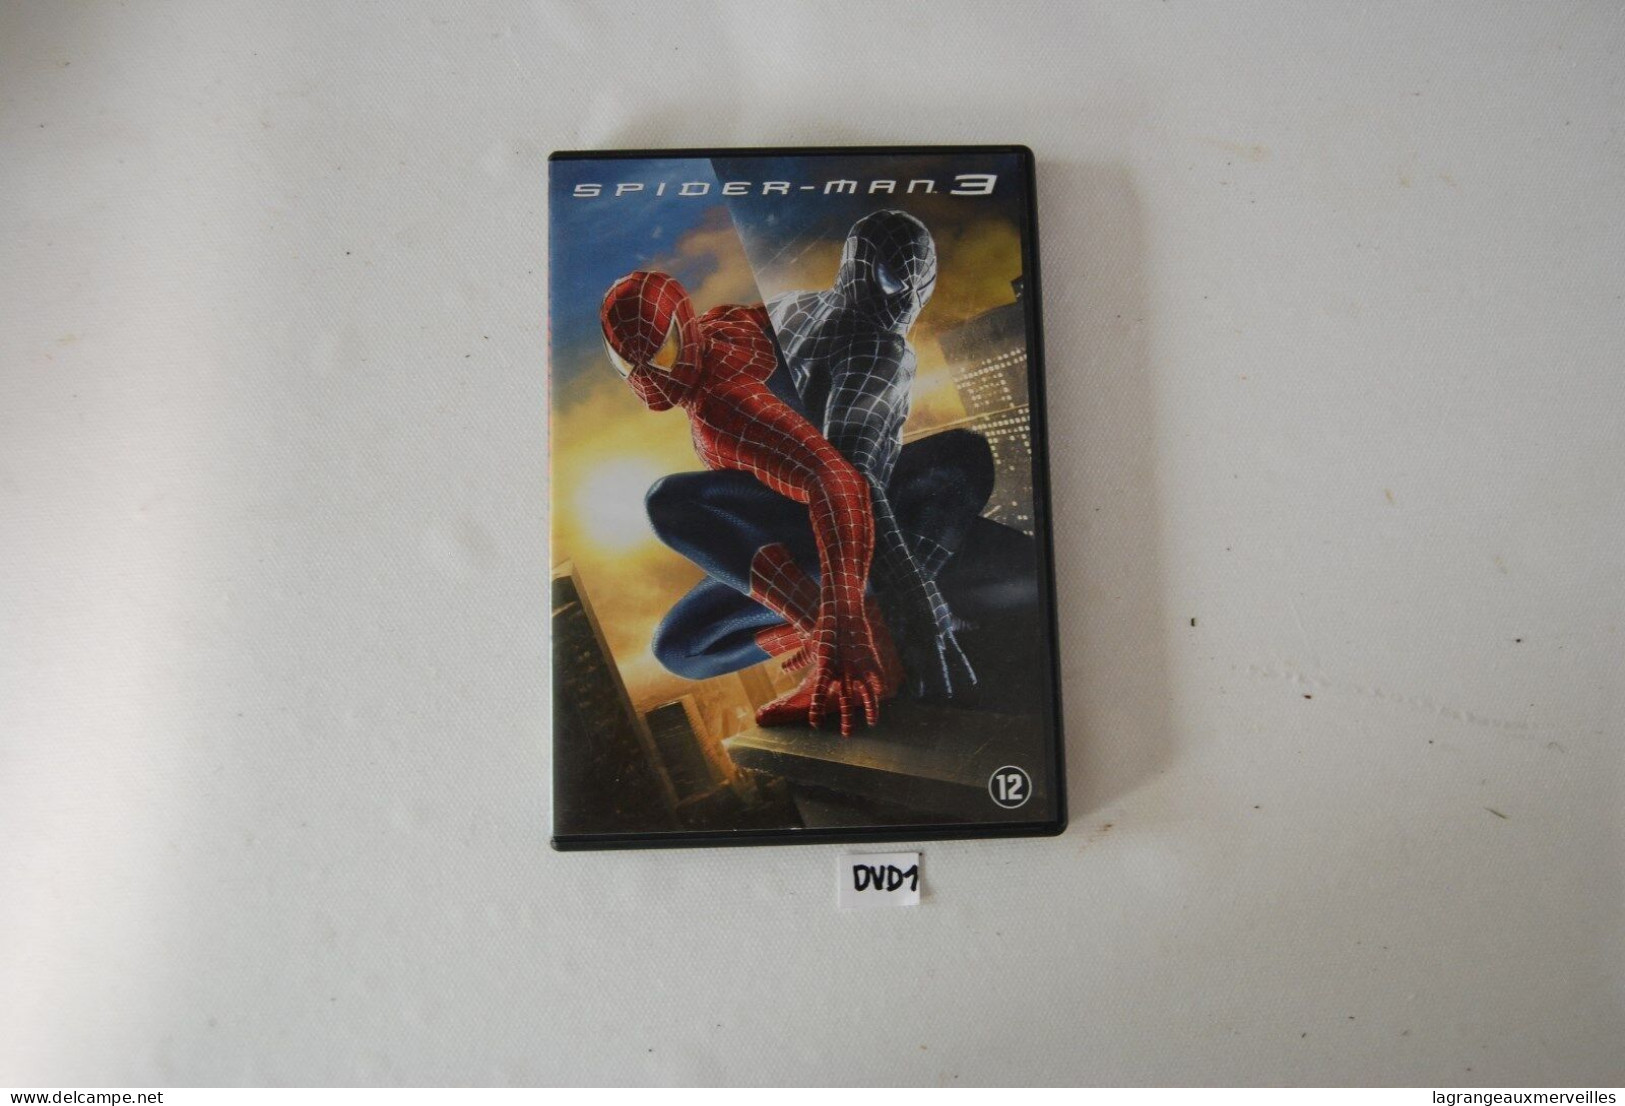 DVD 1 - SPIDER MAN 3 - Action & Abenteuer